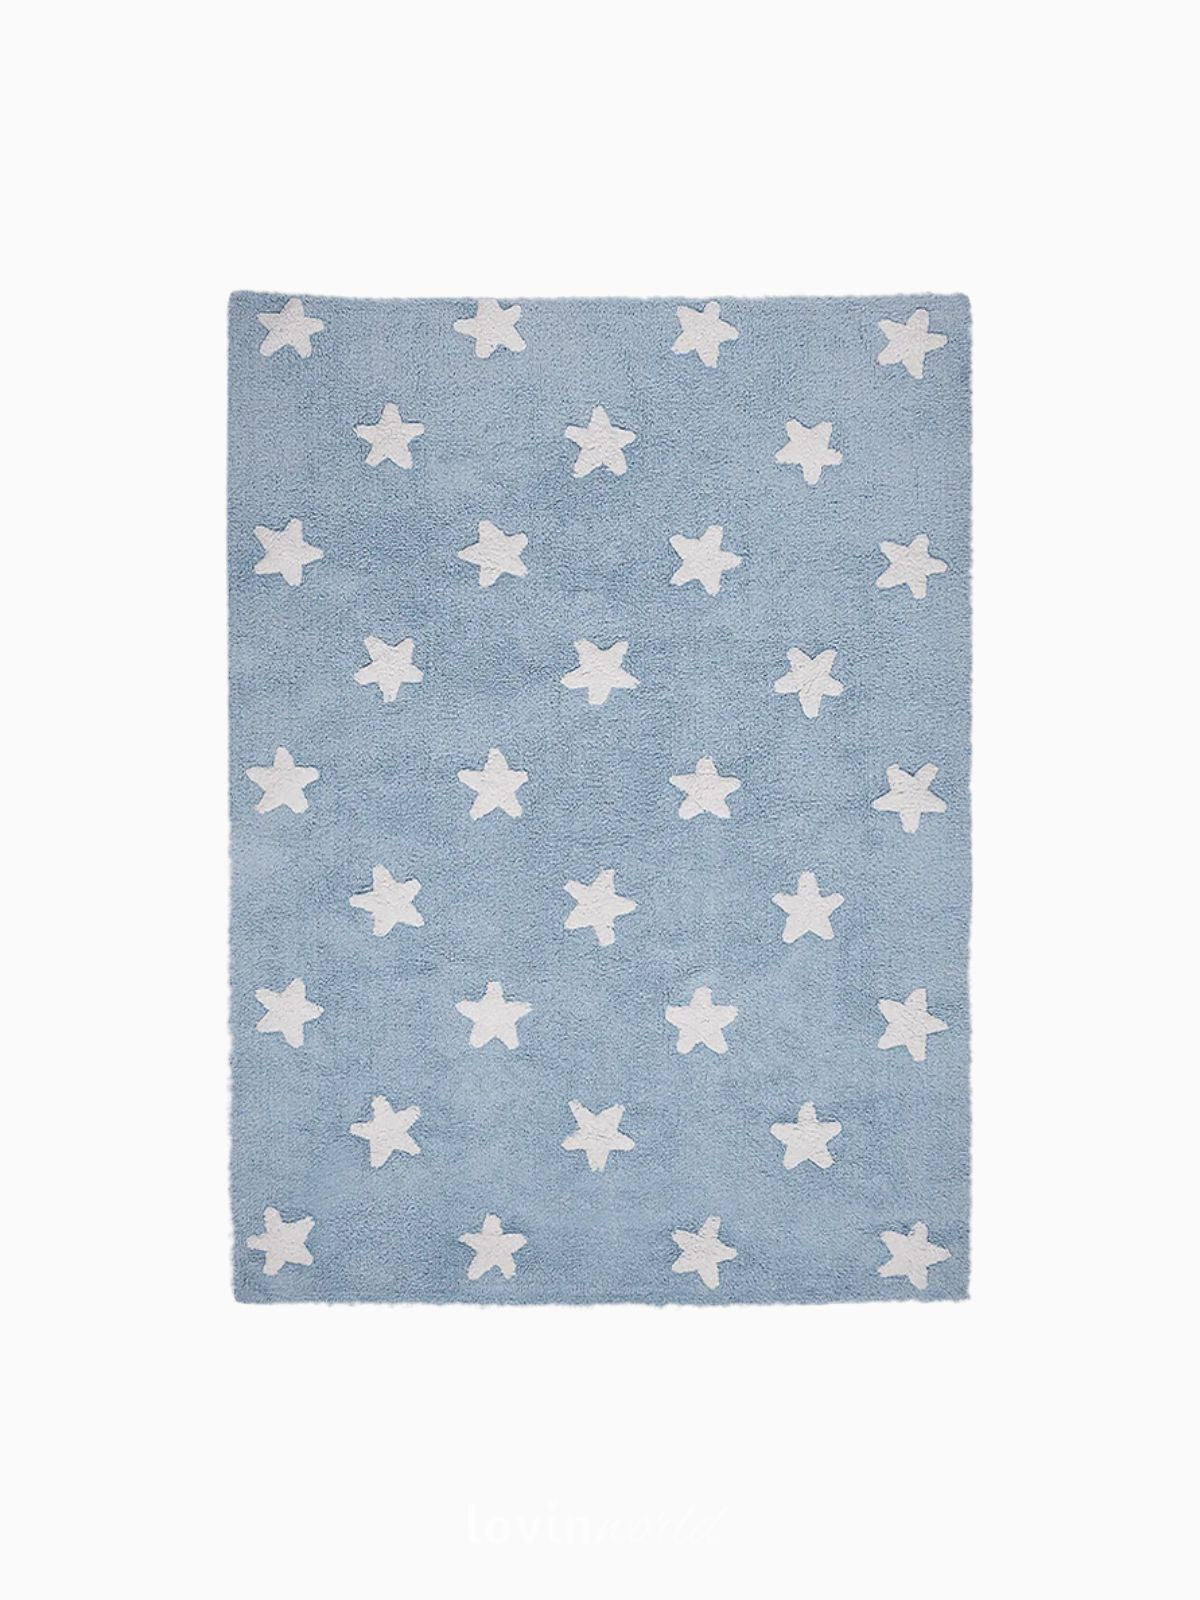 Tappeto lavabile per bambini Stars in colore blu 120x160 cm.